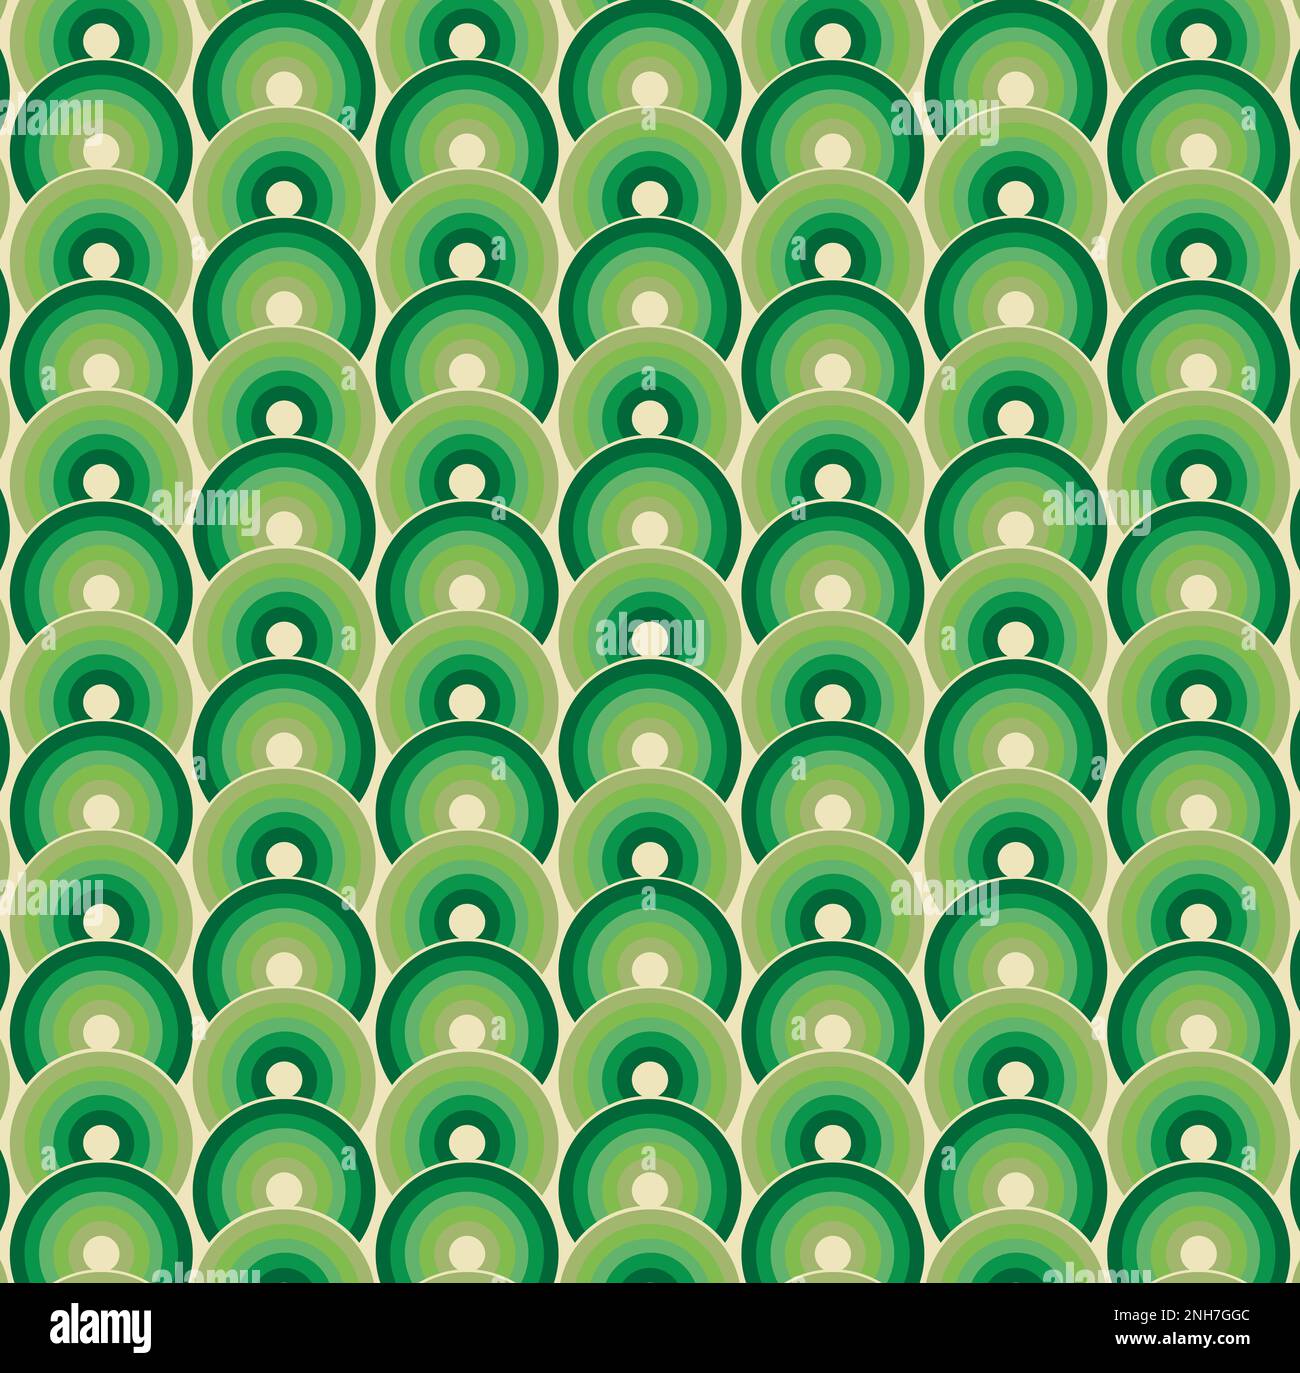 Retro moderno - 70s Estilo - Círculos verdes en el patrón de crema Foto de stock